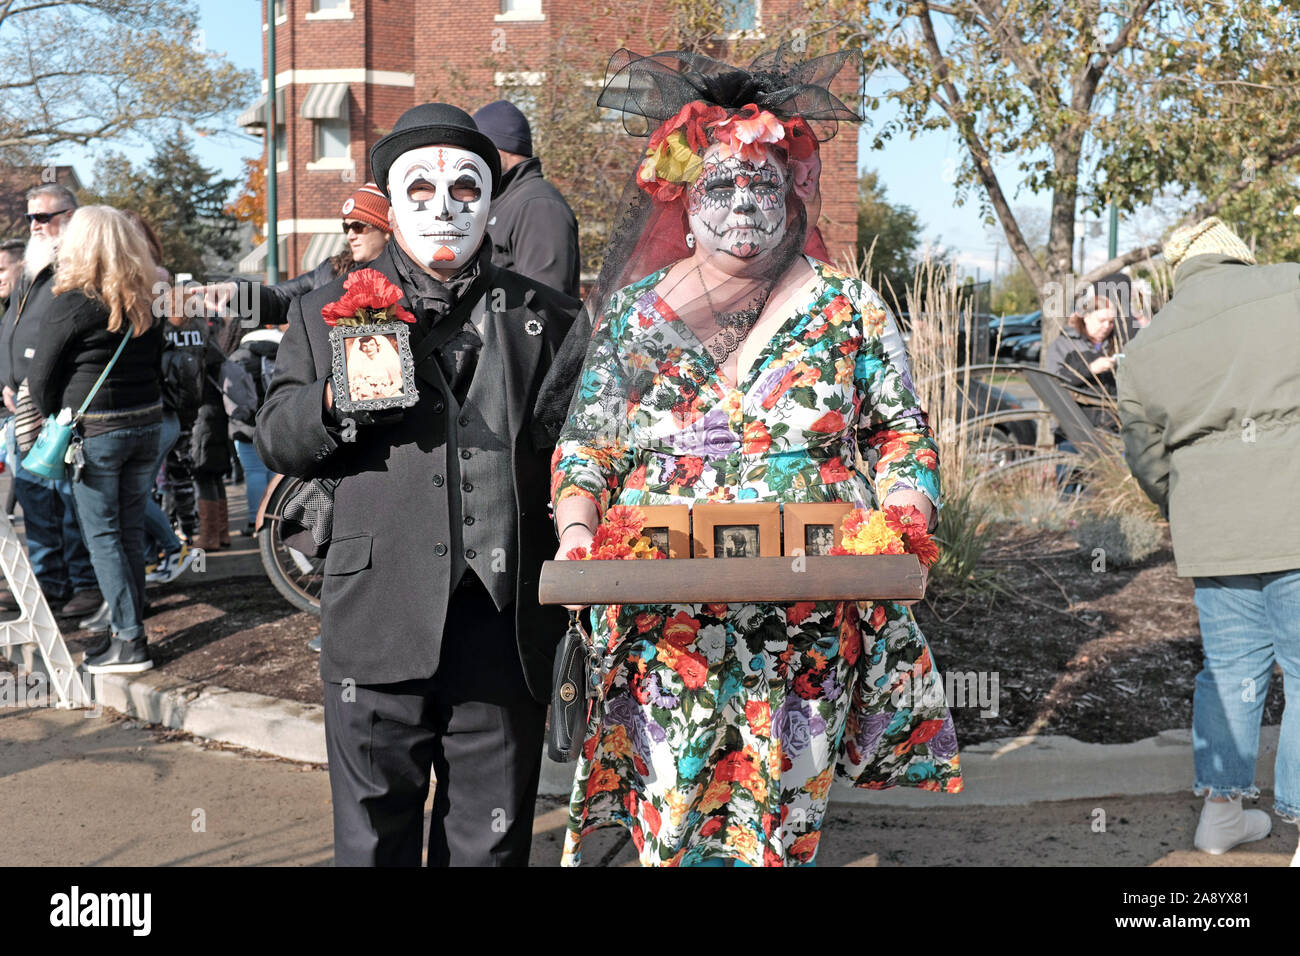 Un paio nel cranio colorati trucco e una maschera per celebrare il Dia de los Muertos in Cleveland, Ohio, USA tenendo momentos delle persone care che passato. Foto Stock